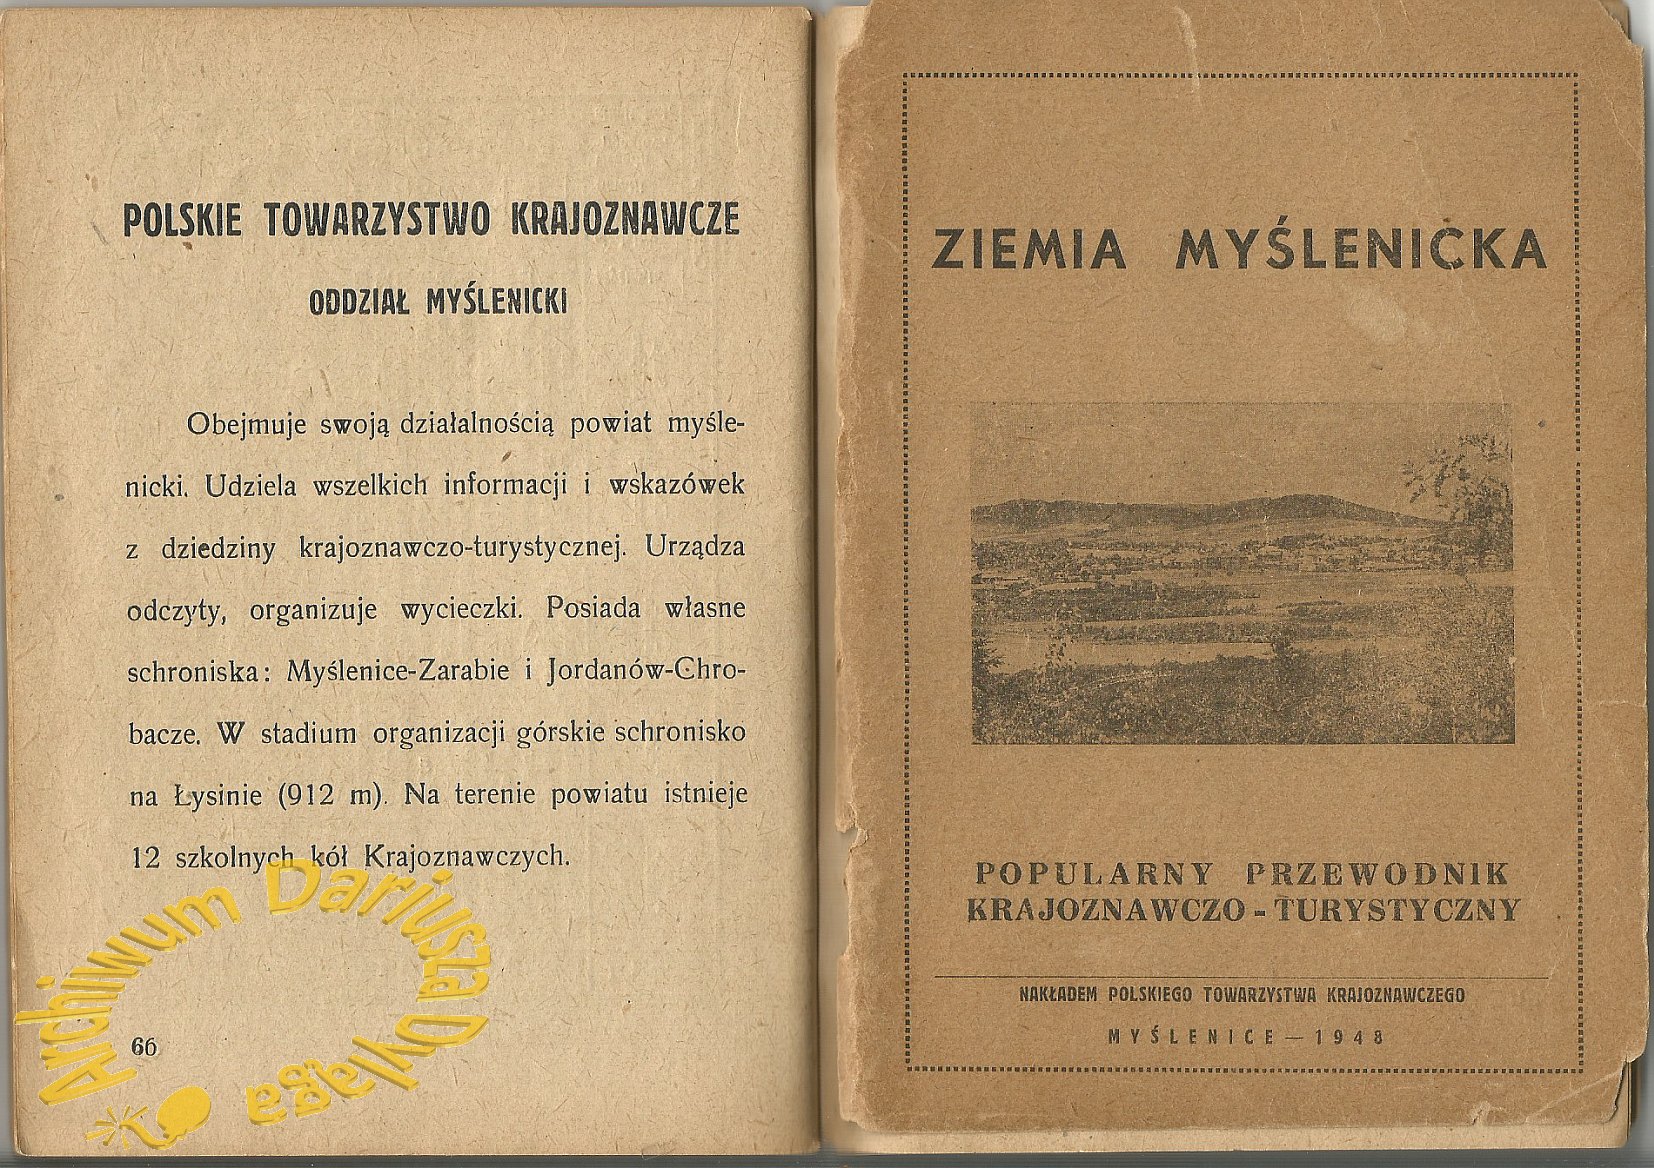 1948-ziemia-myslenicka-001